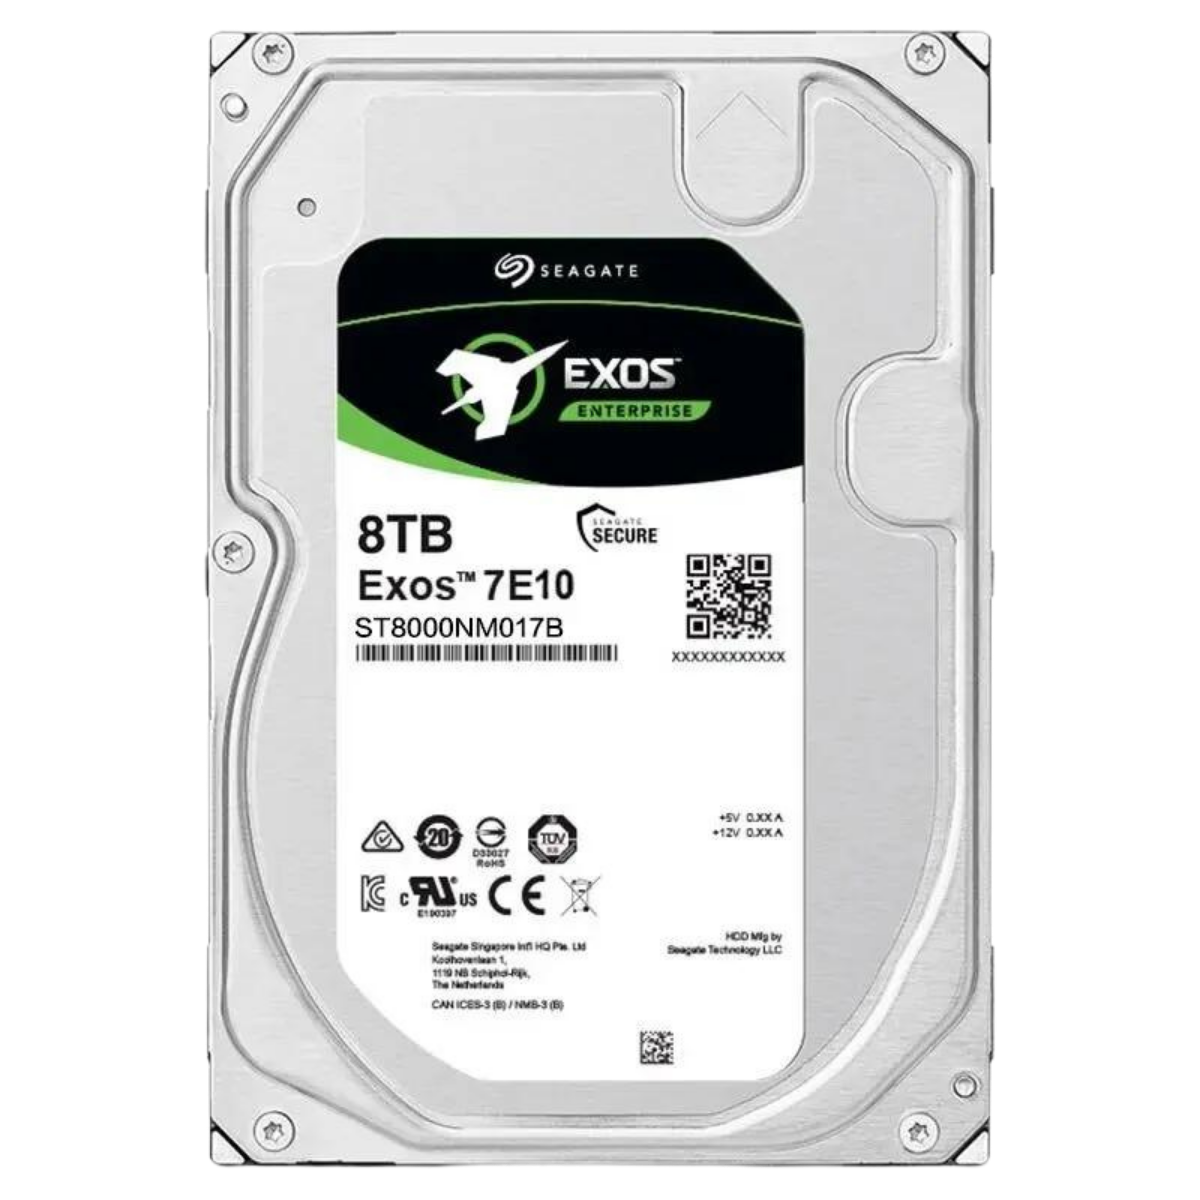 Seagate Exos 8 TB 7E10 SATA 3.0 7200 RPM 3.5'' Harddisk